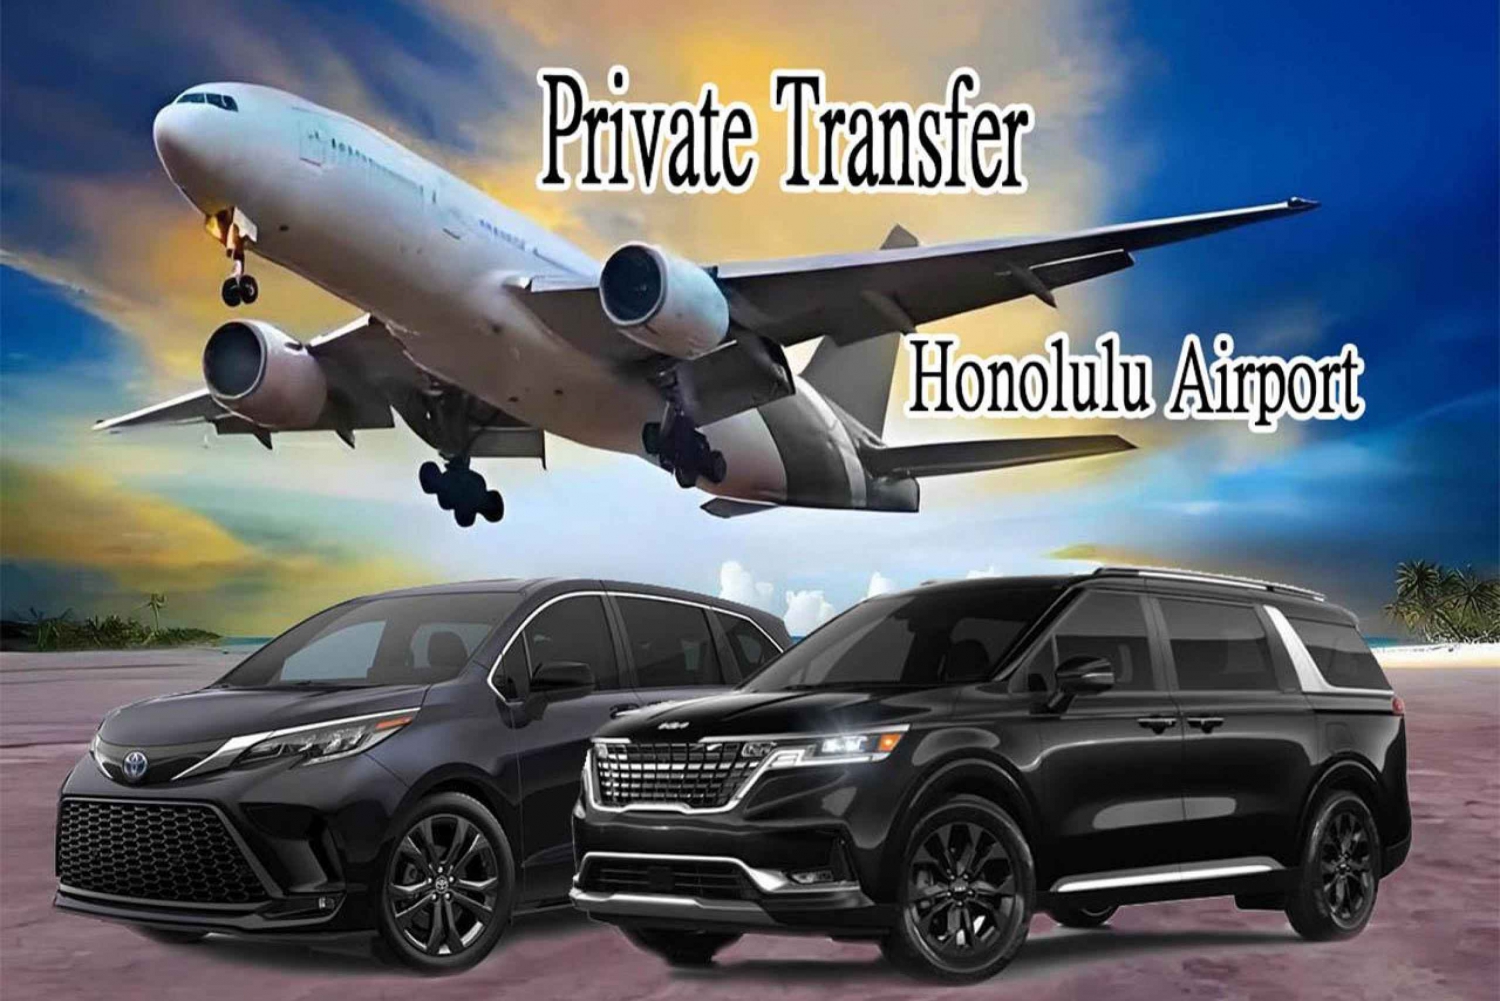 Aeroporto di Honolulu - Trasferimento privato a Waikiki